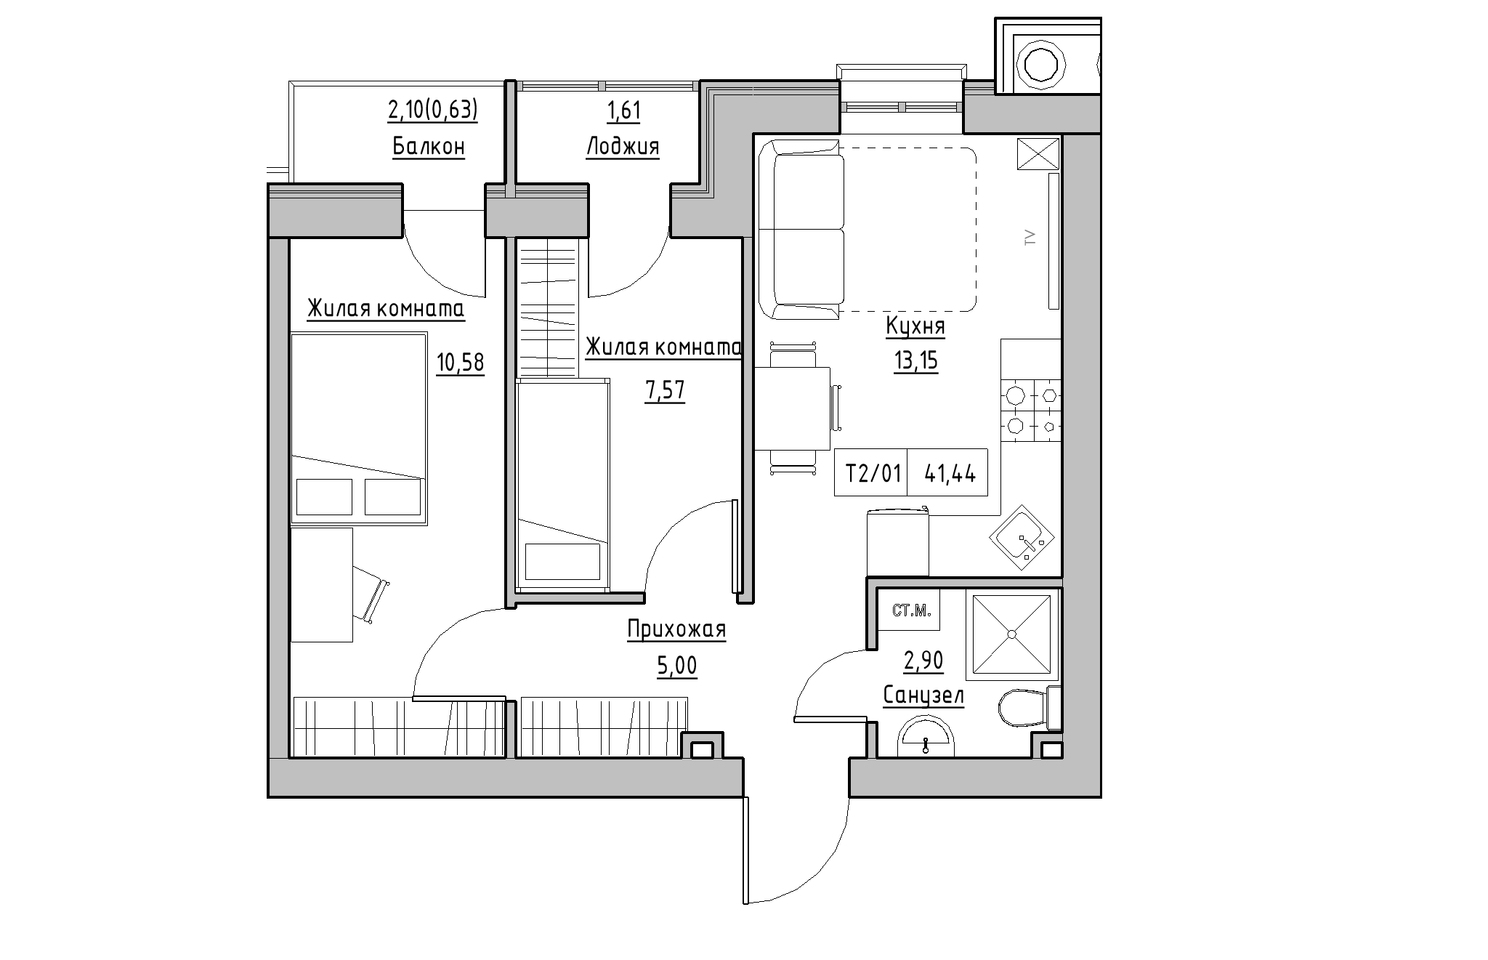 Планировка 2-к квартира площей 41.44м2, KS-010-04/0005.